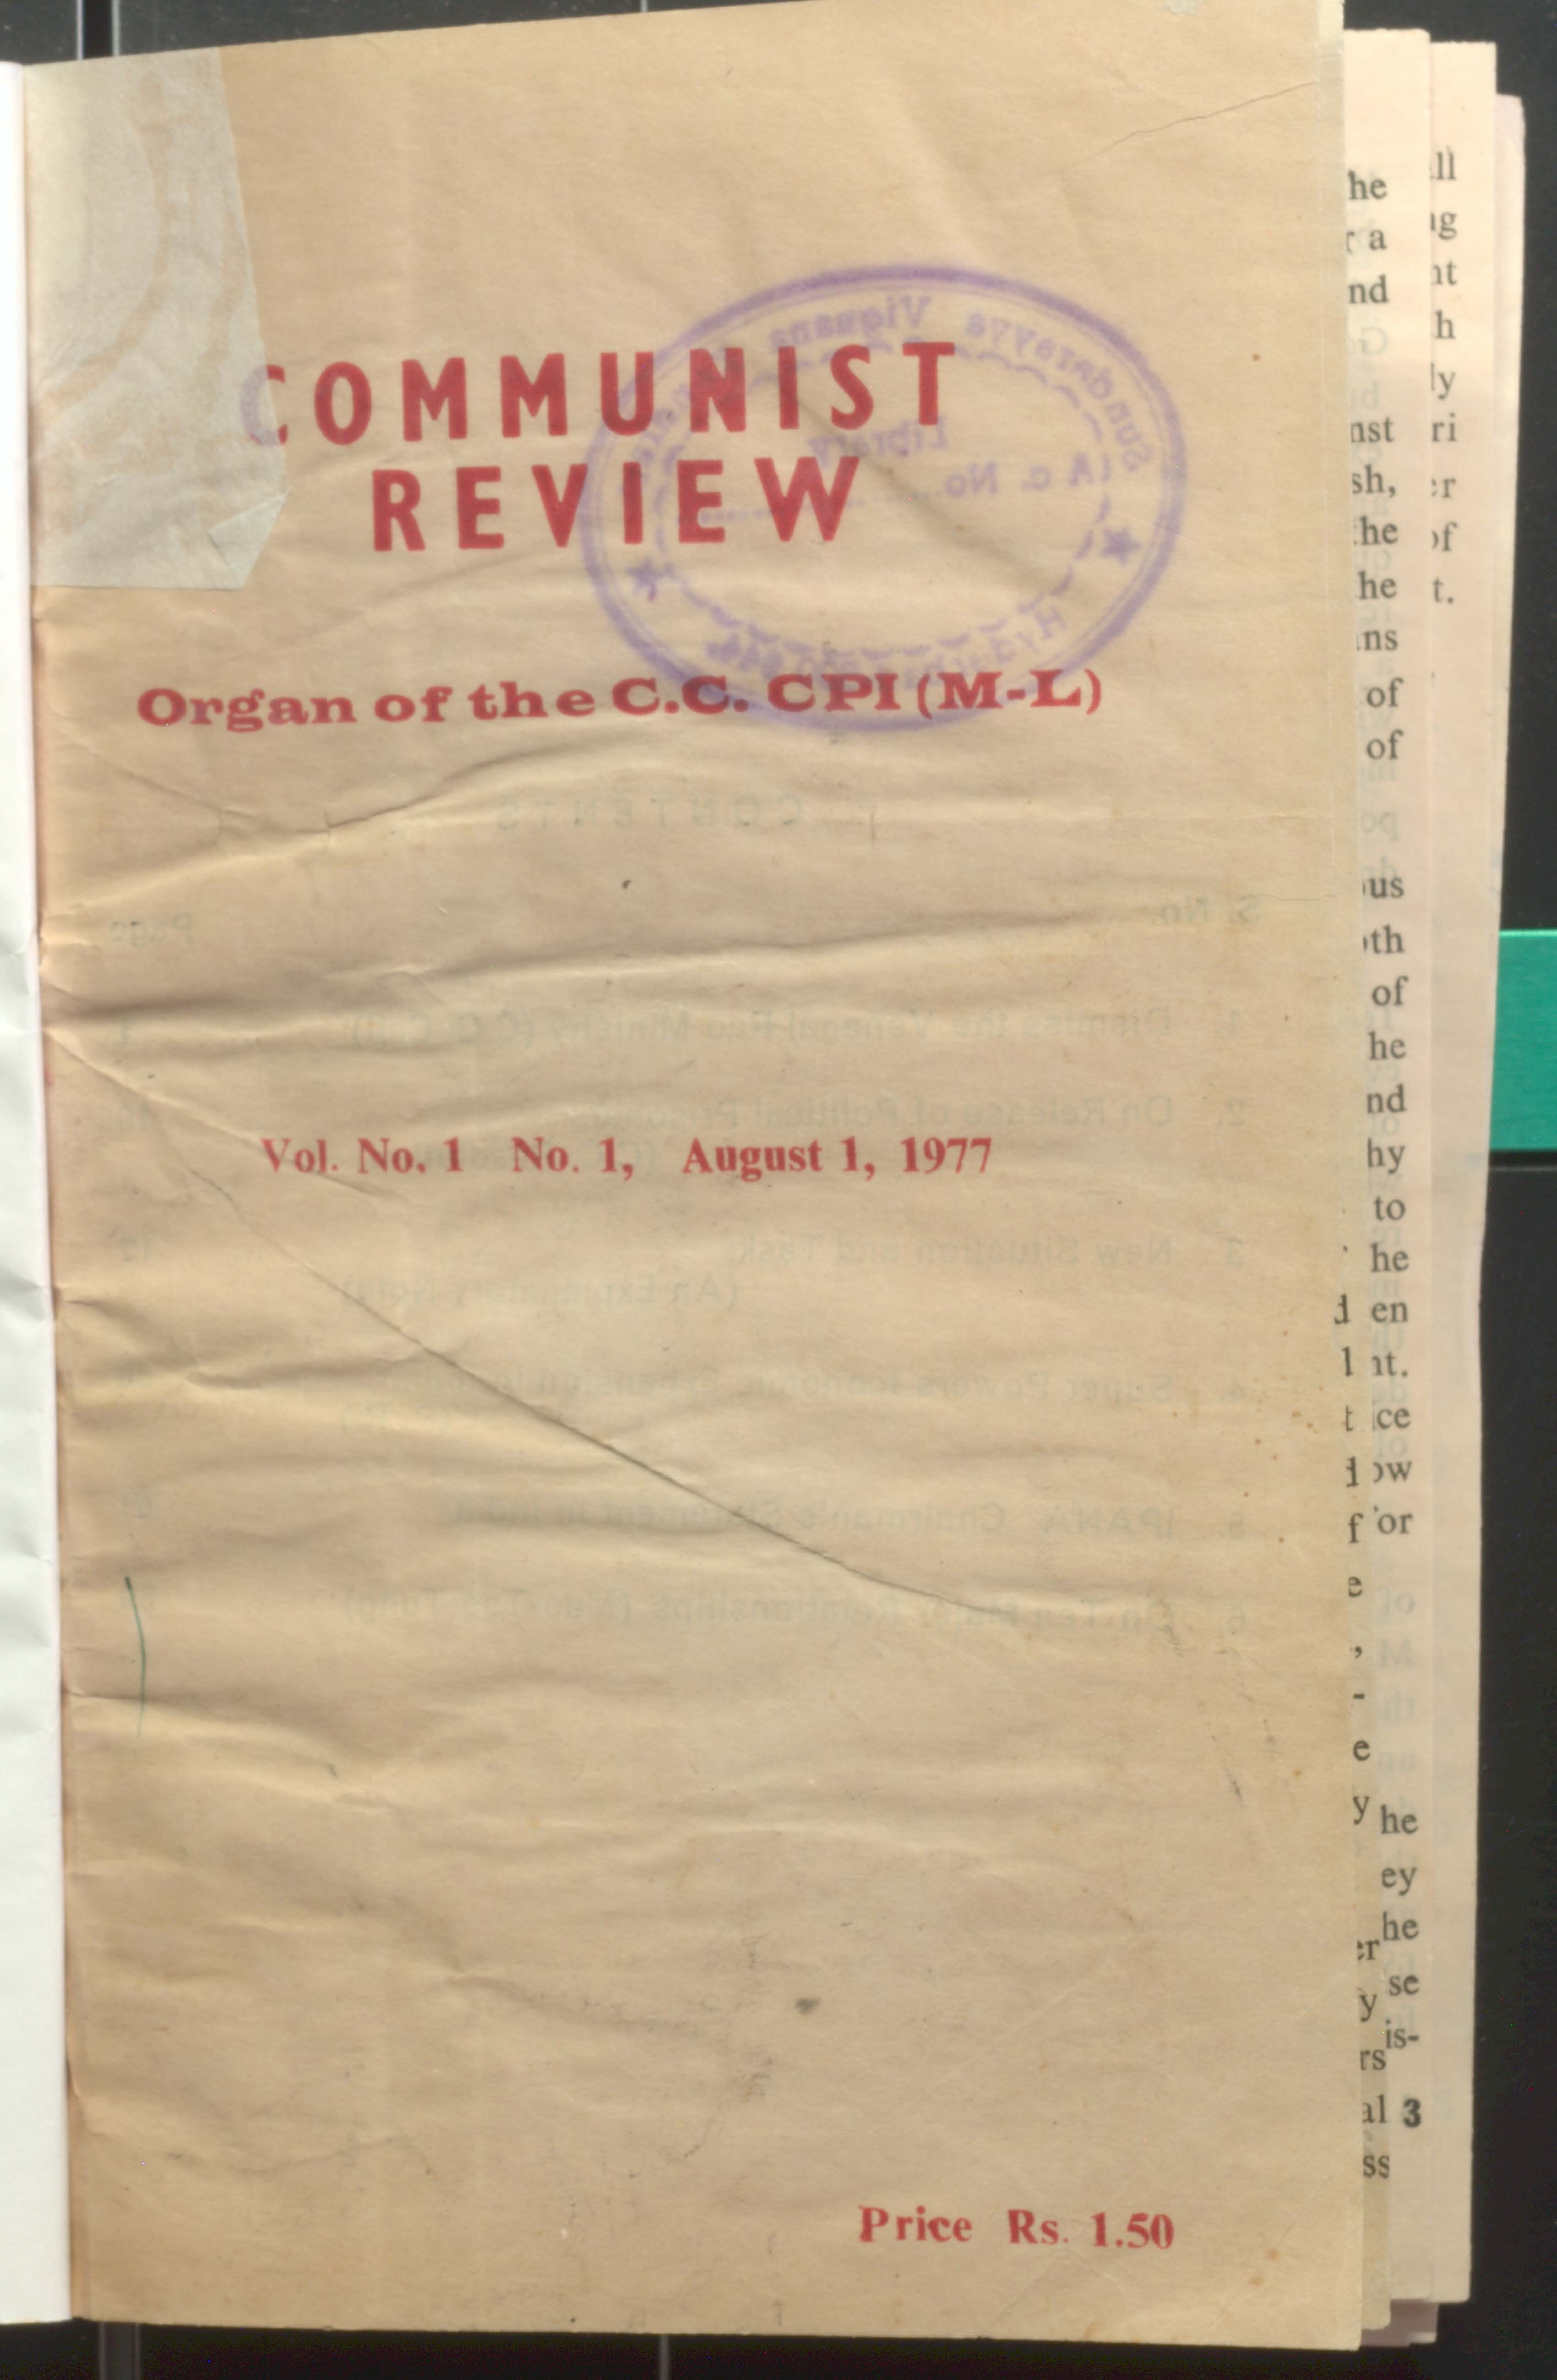 communist review organ of the C.C CPI (M. L) VOL-I